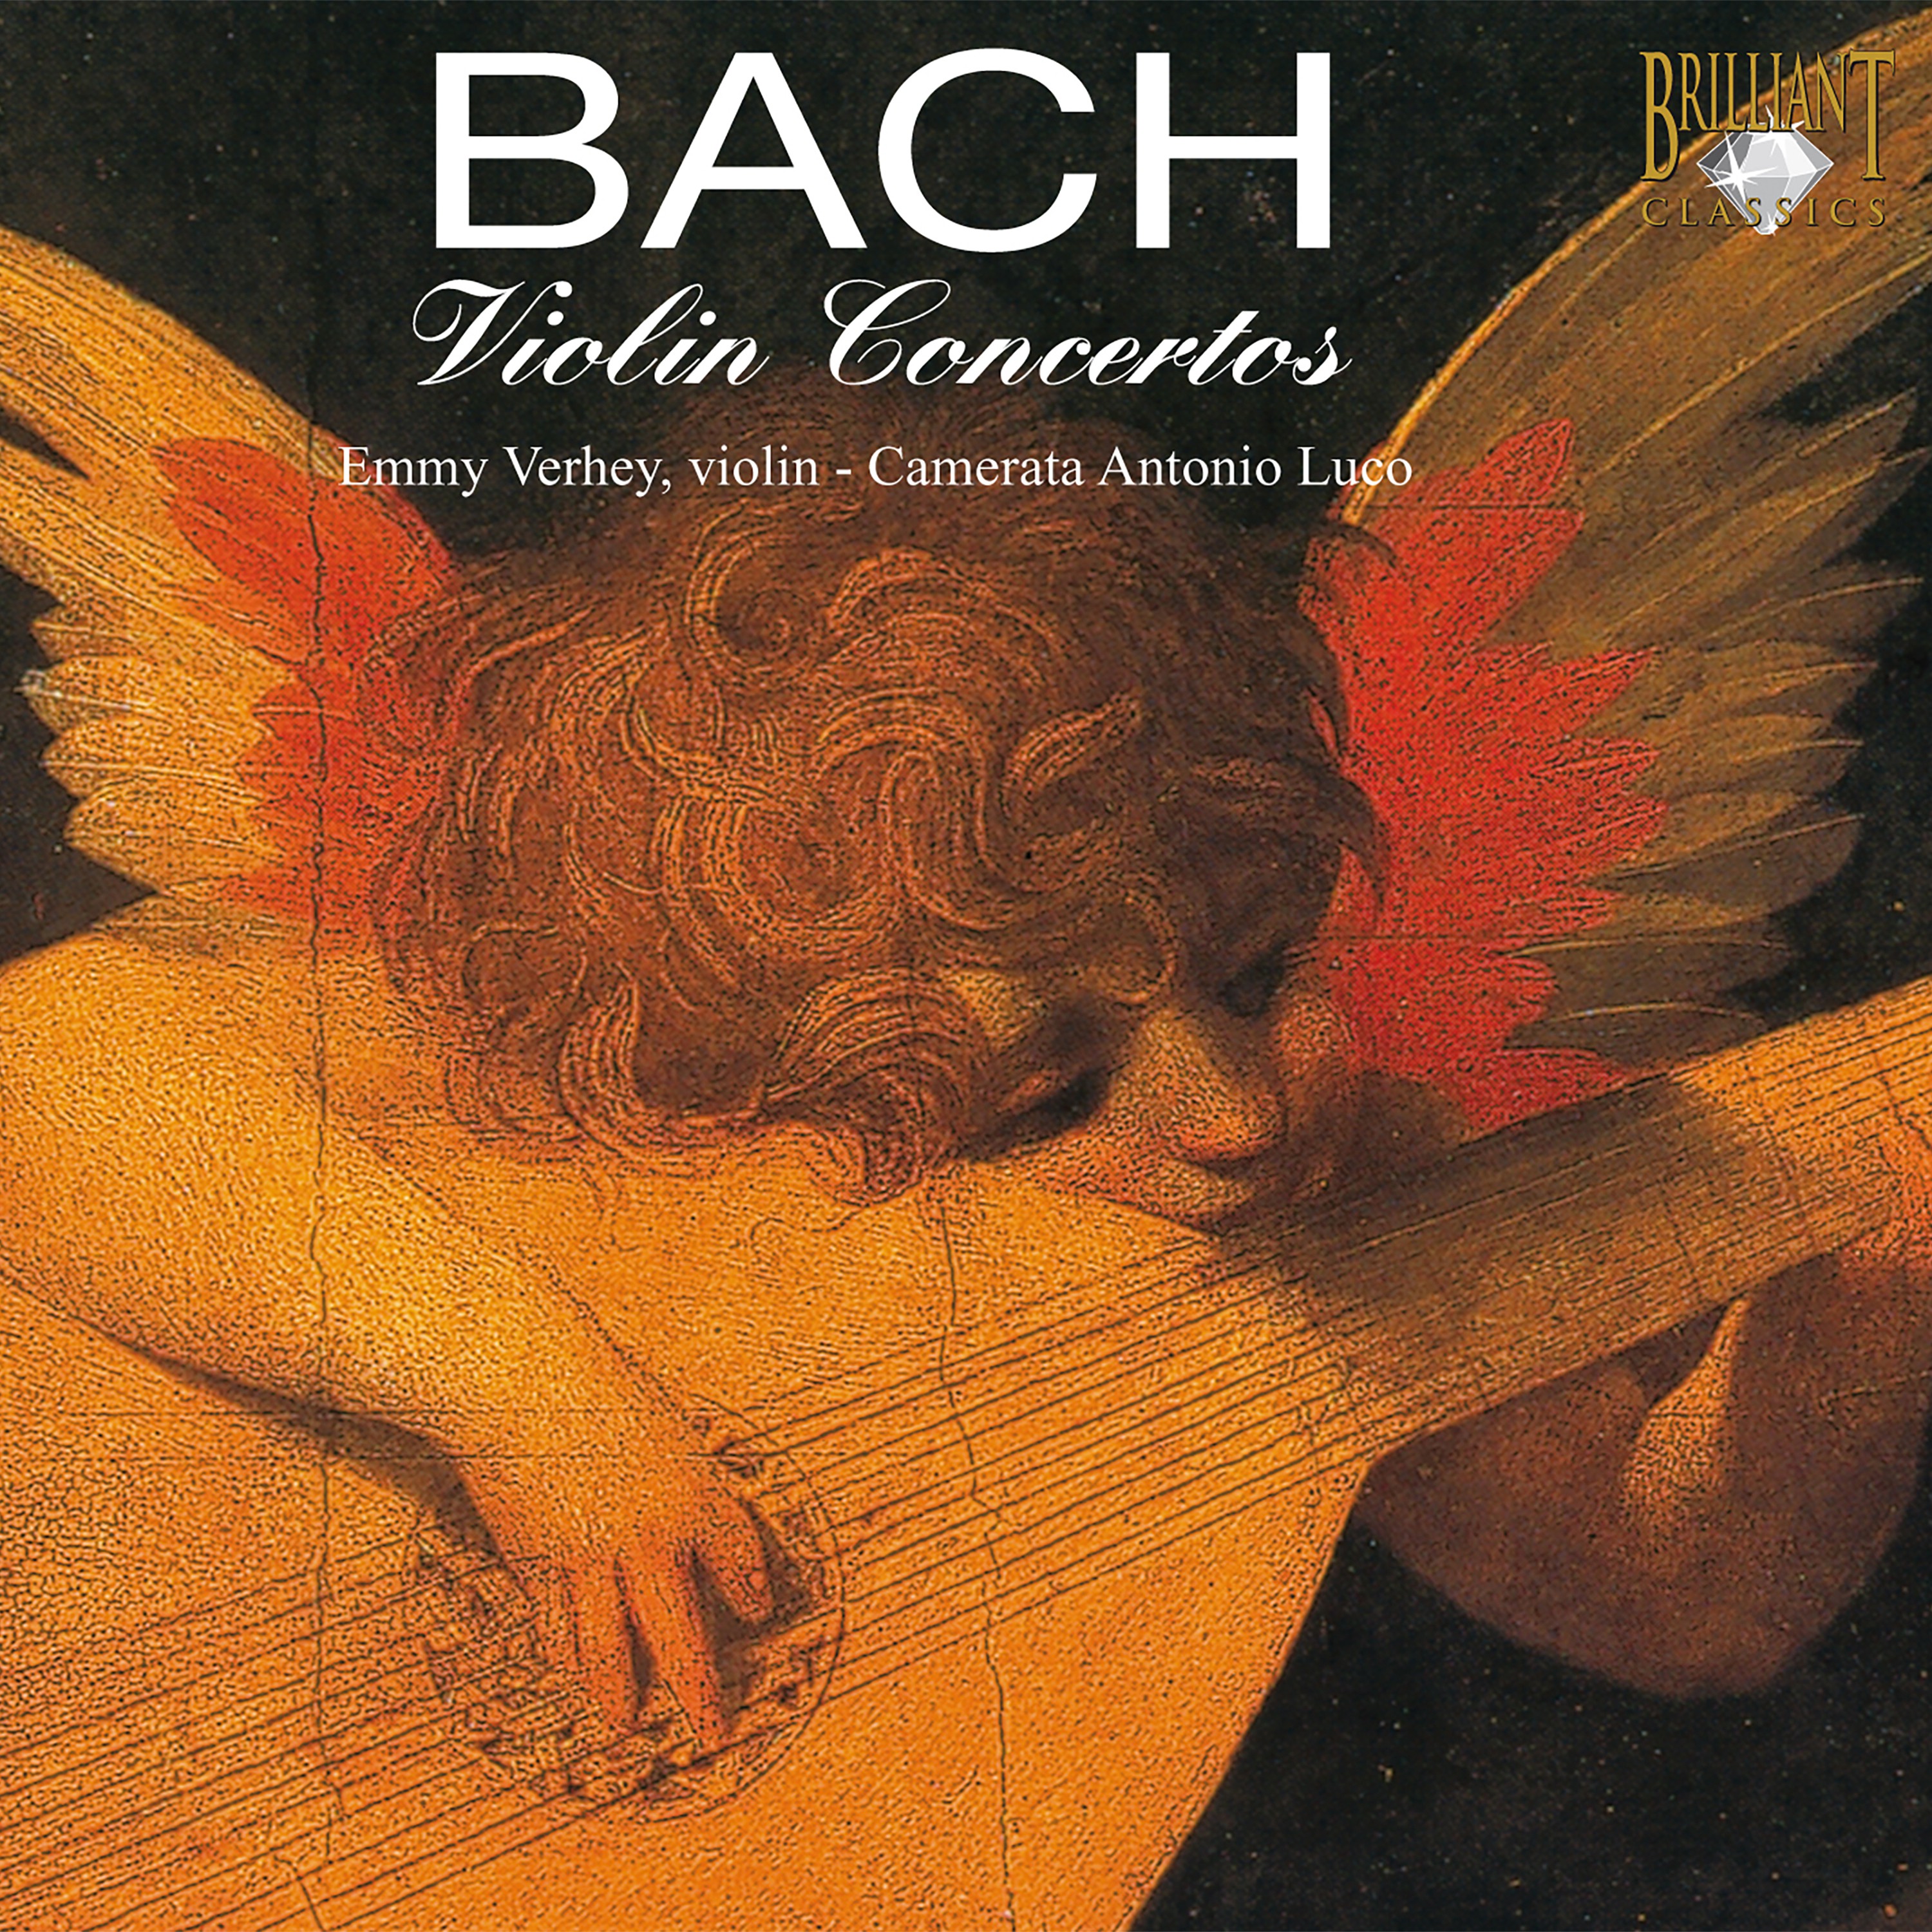 Violin Concerto in A Minor, BWV 1041: Adagio